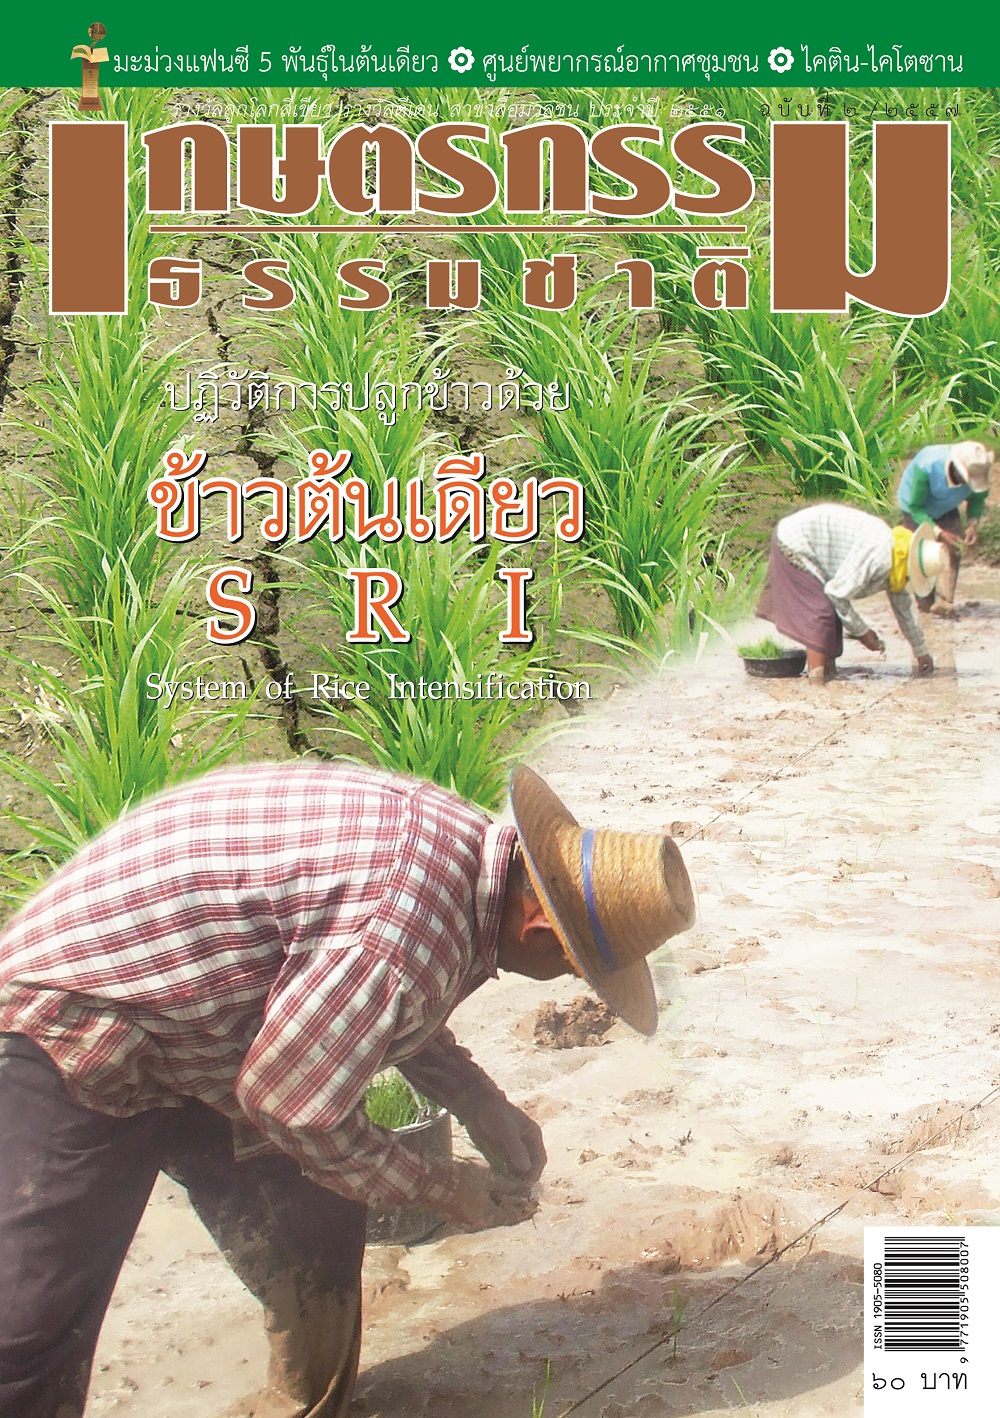 วารสารเกษตรกรรมธรรมชาติ ฉบับที่ 2/2557 ปฏิวัติการปลูกข้าวด้วย ข้าวต้นเดียว SRI SYSTEM OF RICE INTENSIFICATION